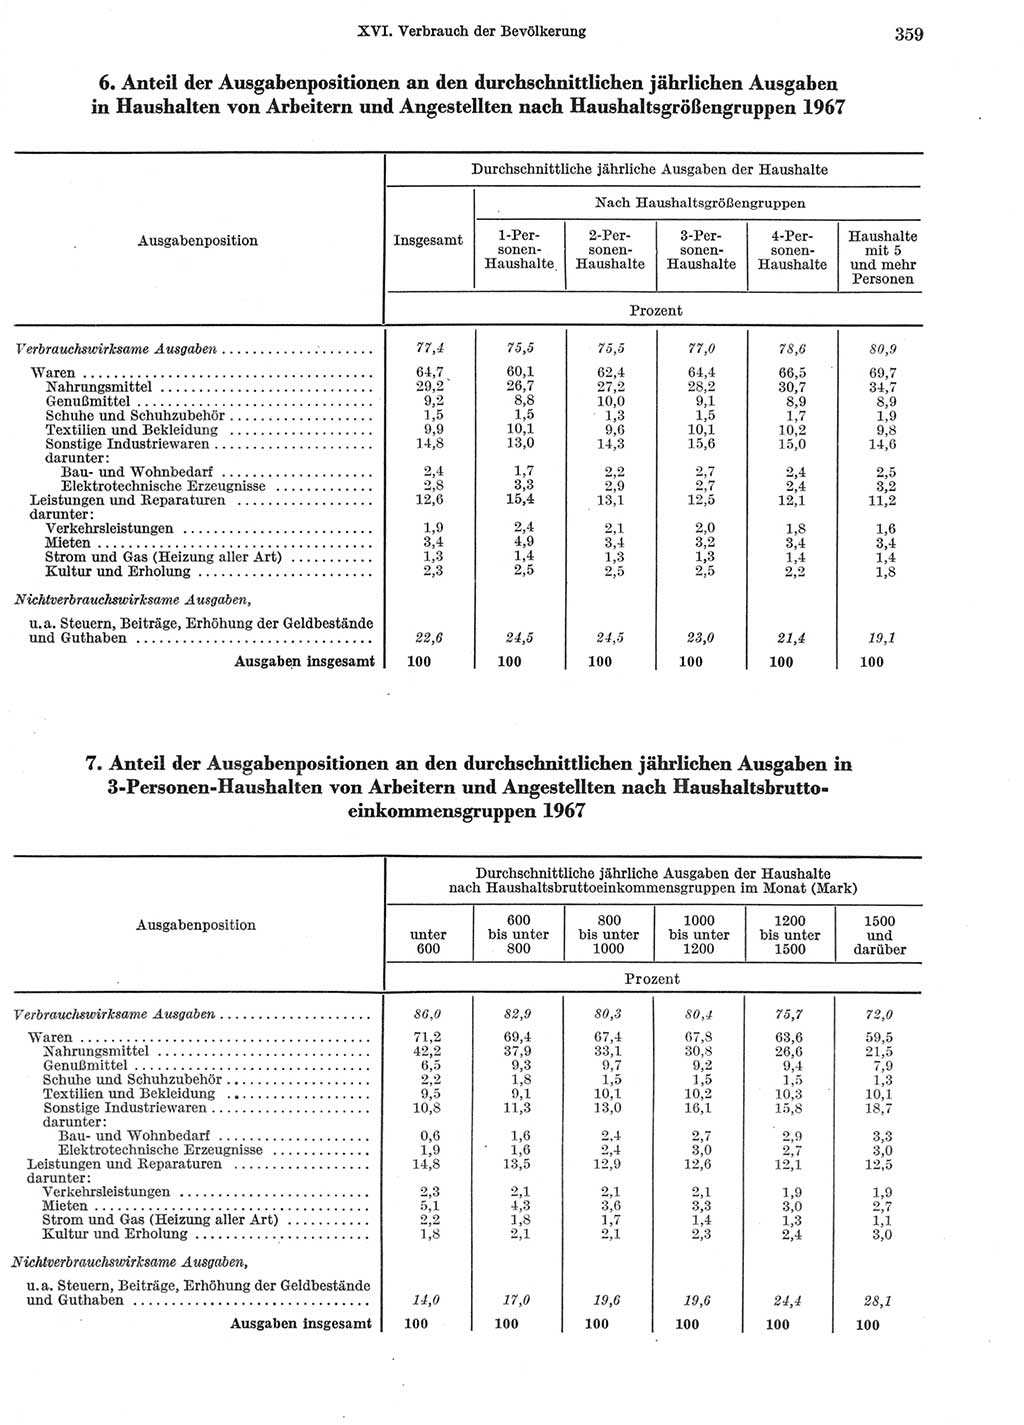 Statistisches Jahrbuch der Deutschen Demokratischen Republik (DDR) 1969, Seite 359 (Stat. Jb. DDR 1969, S. 359)